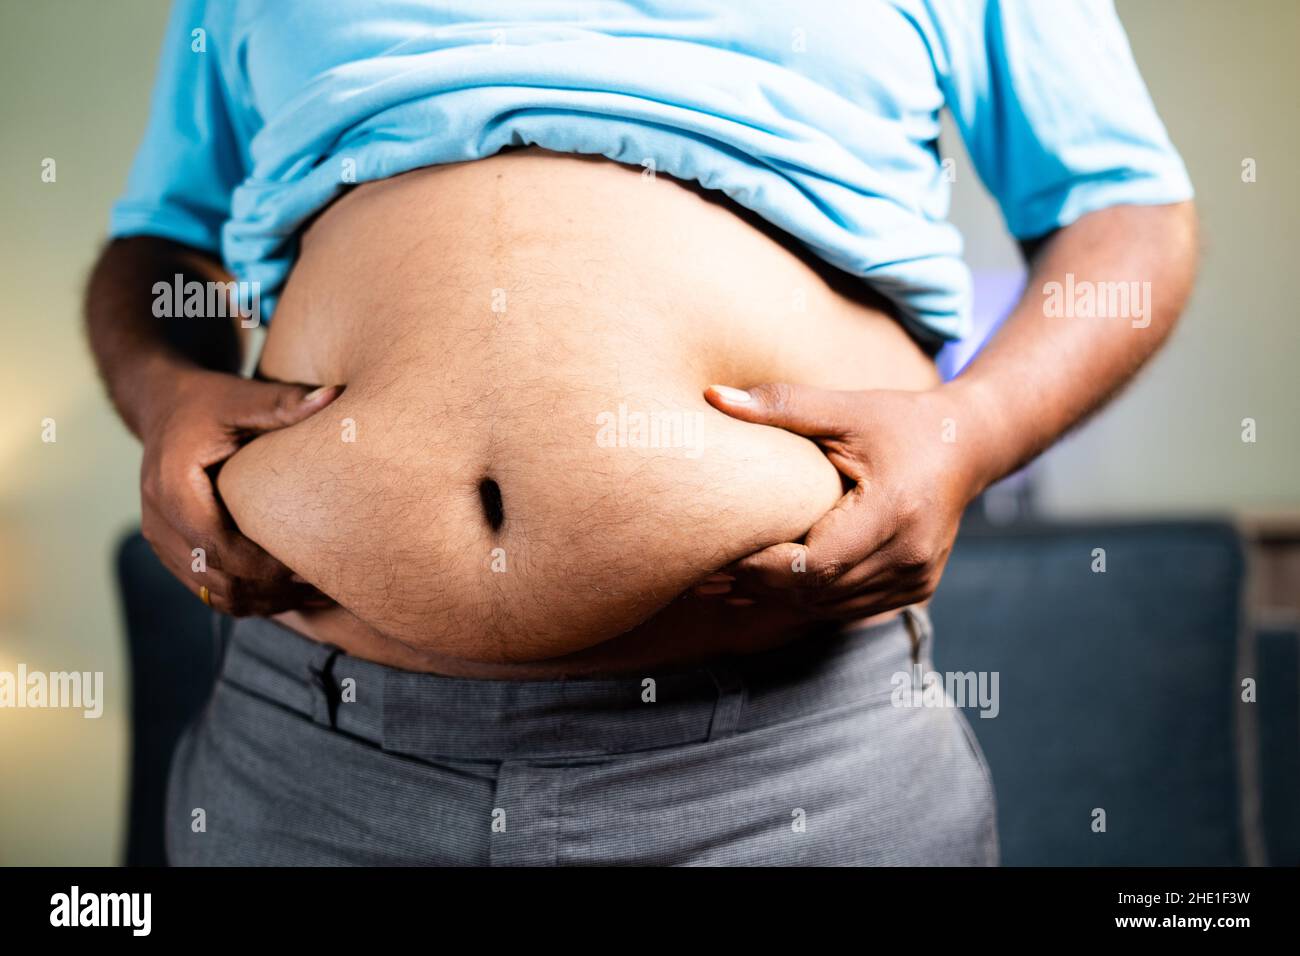 l'uomo grasso irriconoscibile che controlla scuotendo il grasso della pancia - concetto di stile di vita non sano, misurando il grasso corporeo in sovrappeso Foto Stock